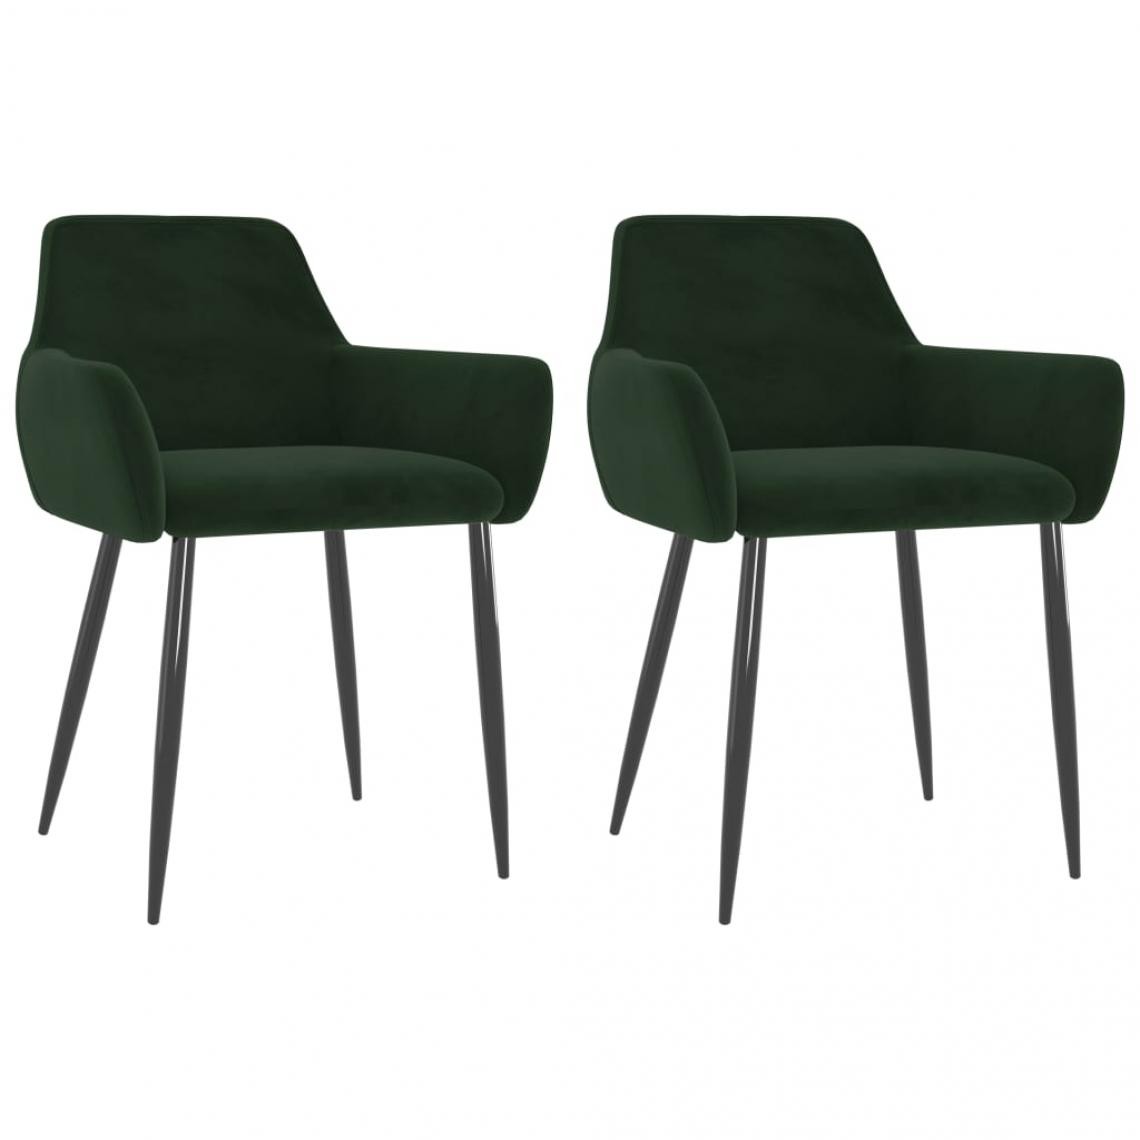 Decoshop26 - Lot de 2 chaises de salle à manger cuisine design moderne velours vert foncé CDS021090 - Chaises